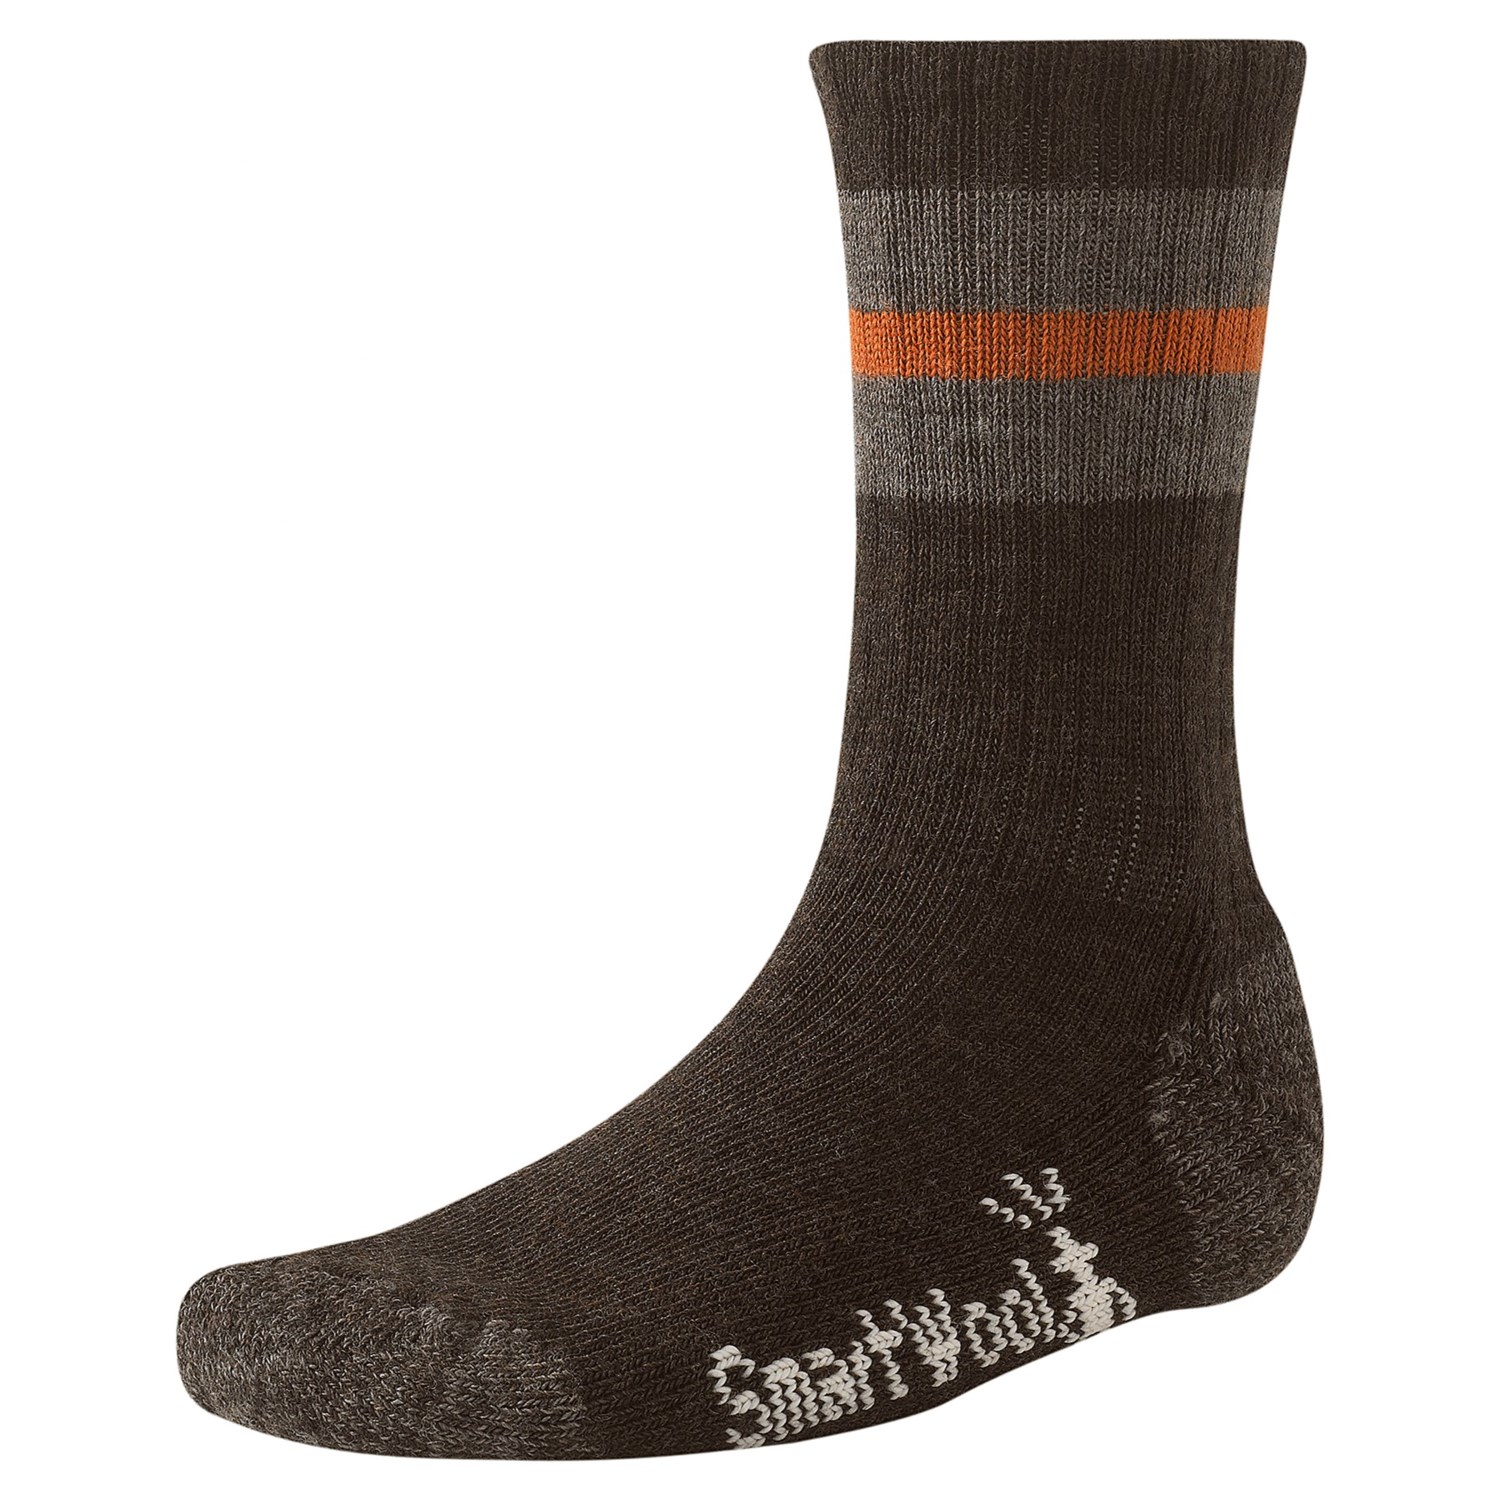 SmartWool Barn Socks  Merino Wool For Men in Chestnut Heather